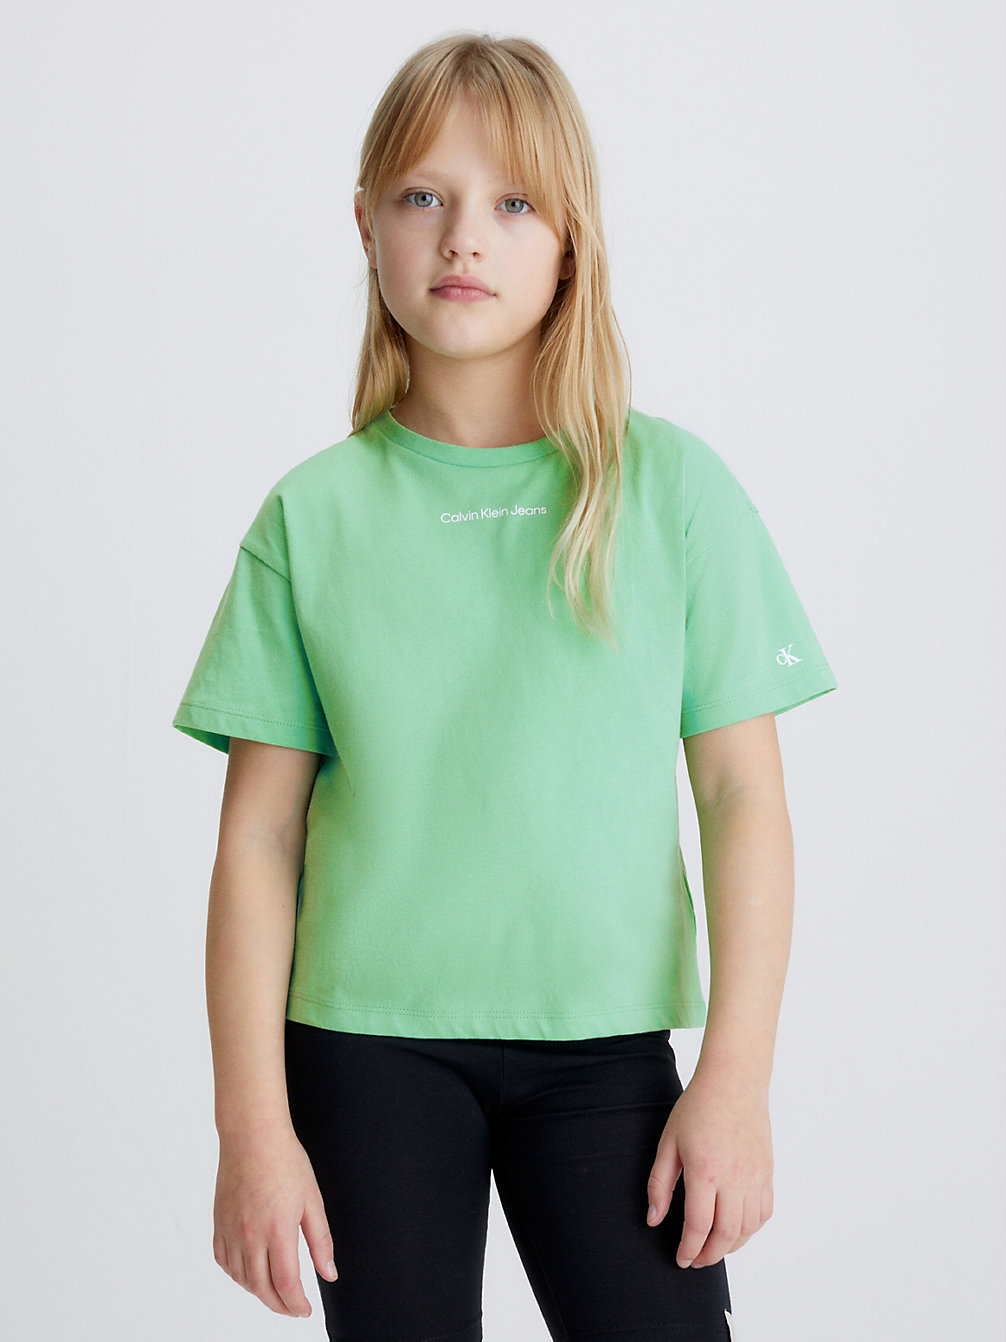 NEPTUNES WAVE Kastiges T-Shirt Aus Bio-Baumwolle undefined Maedchen Calvin Klein